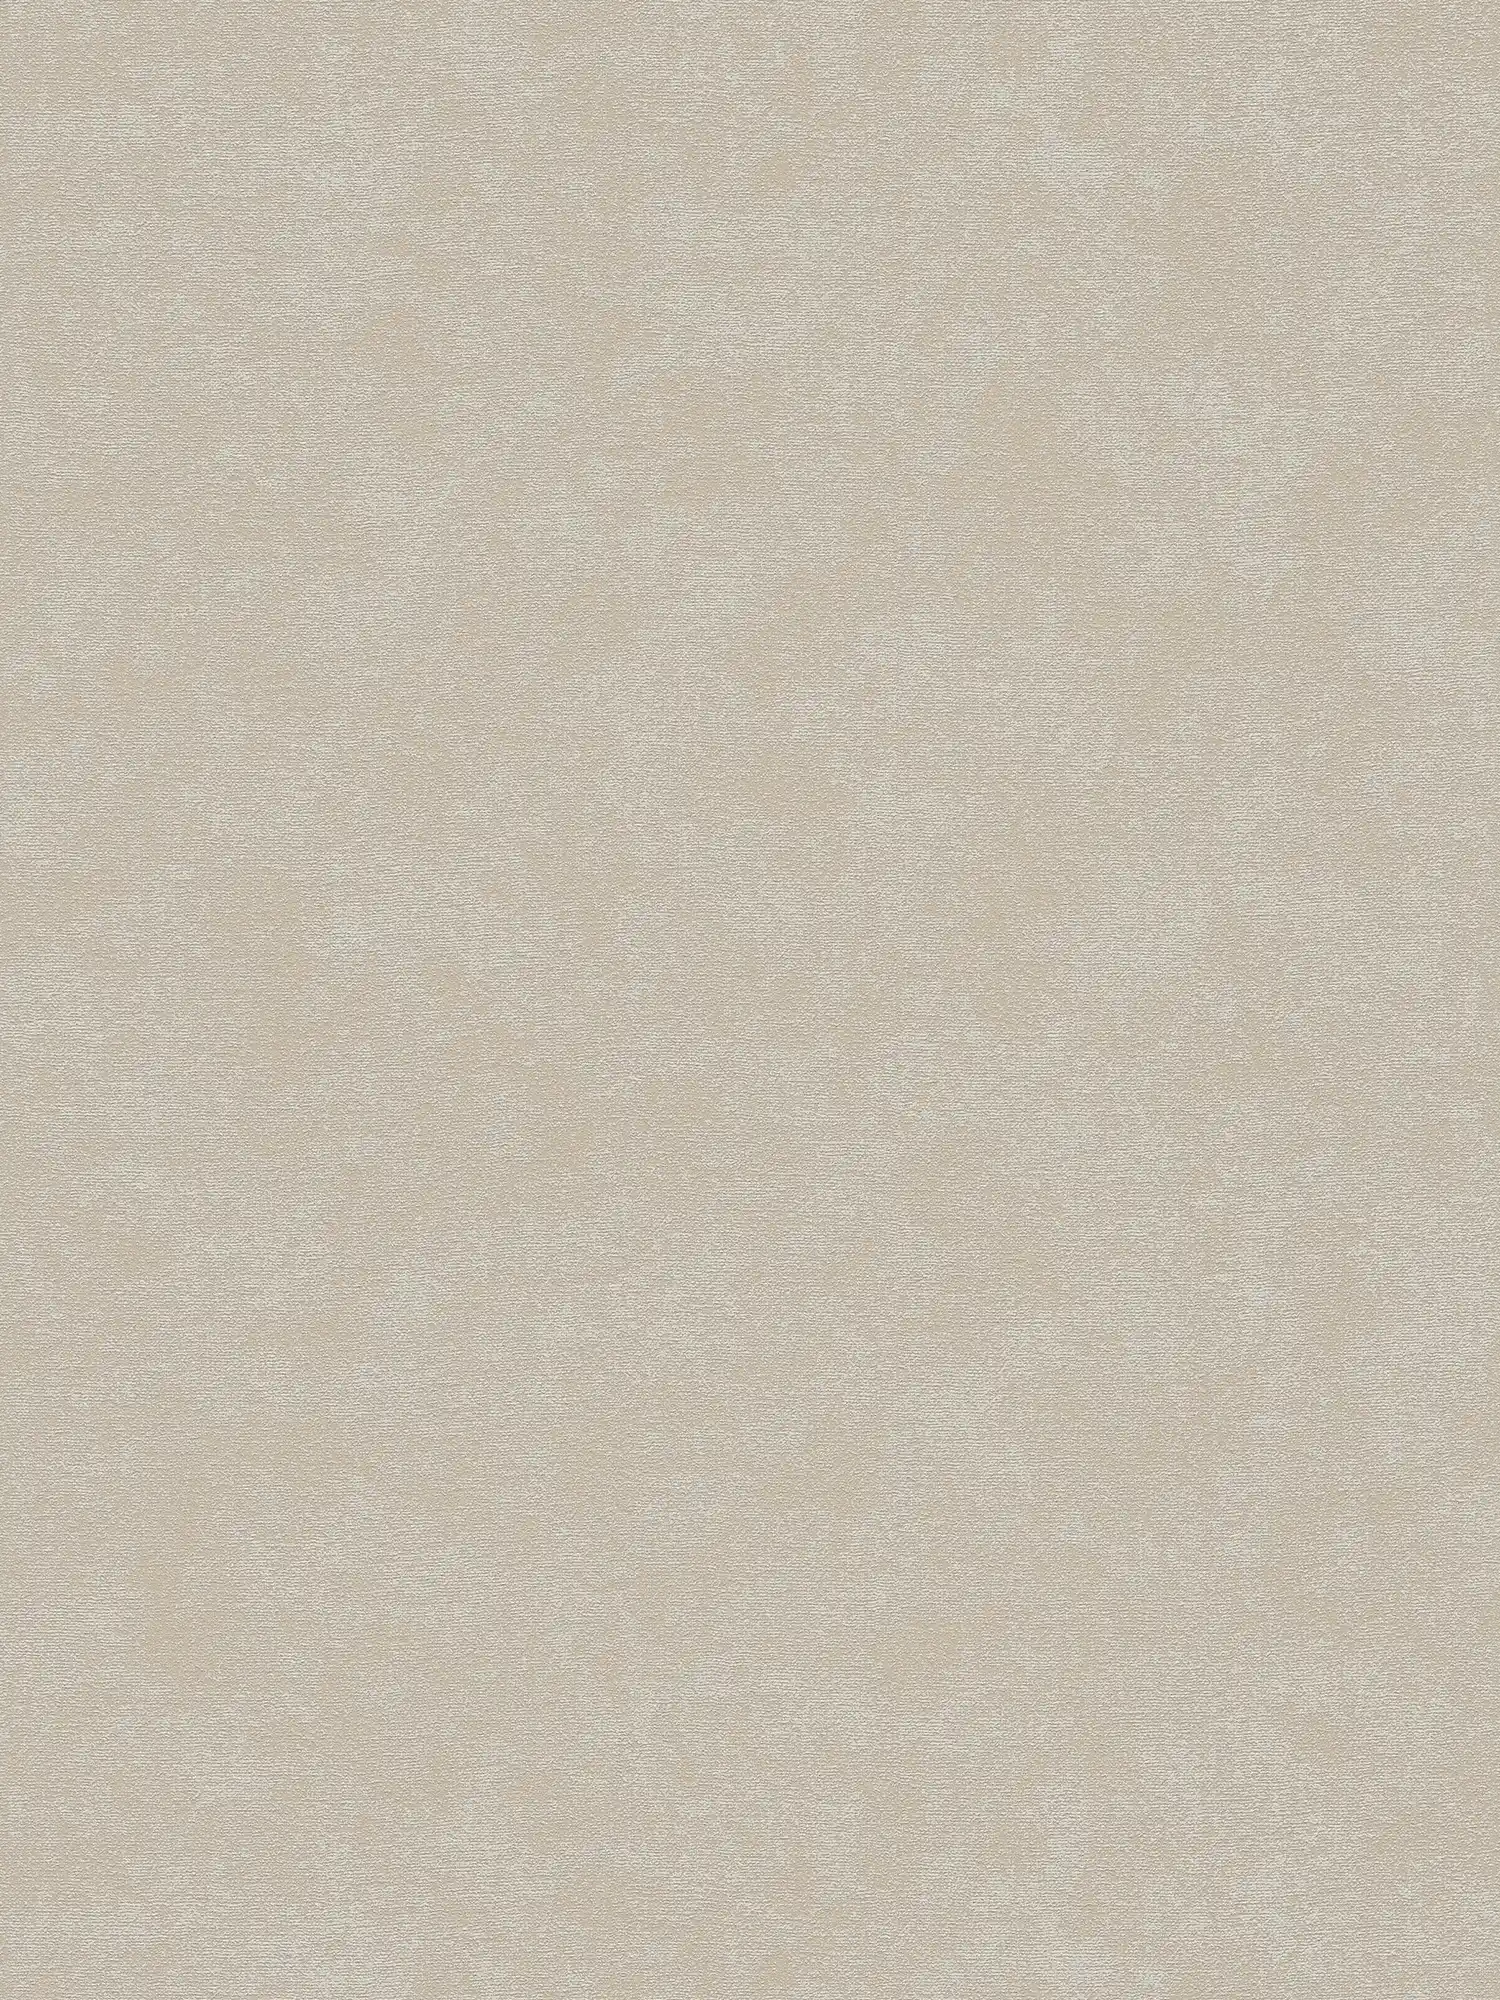 papier peint en papier intissé uni à texture légère - gris, beige
